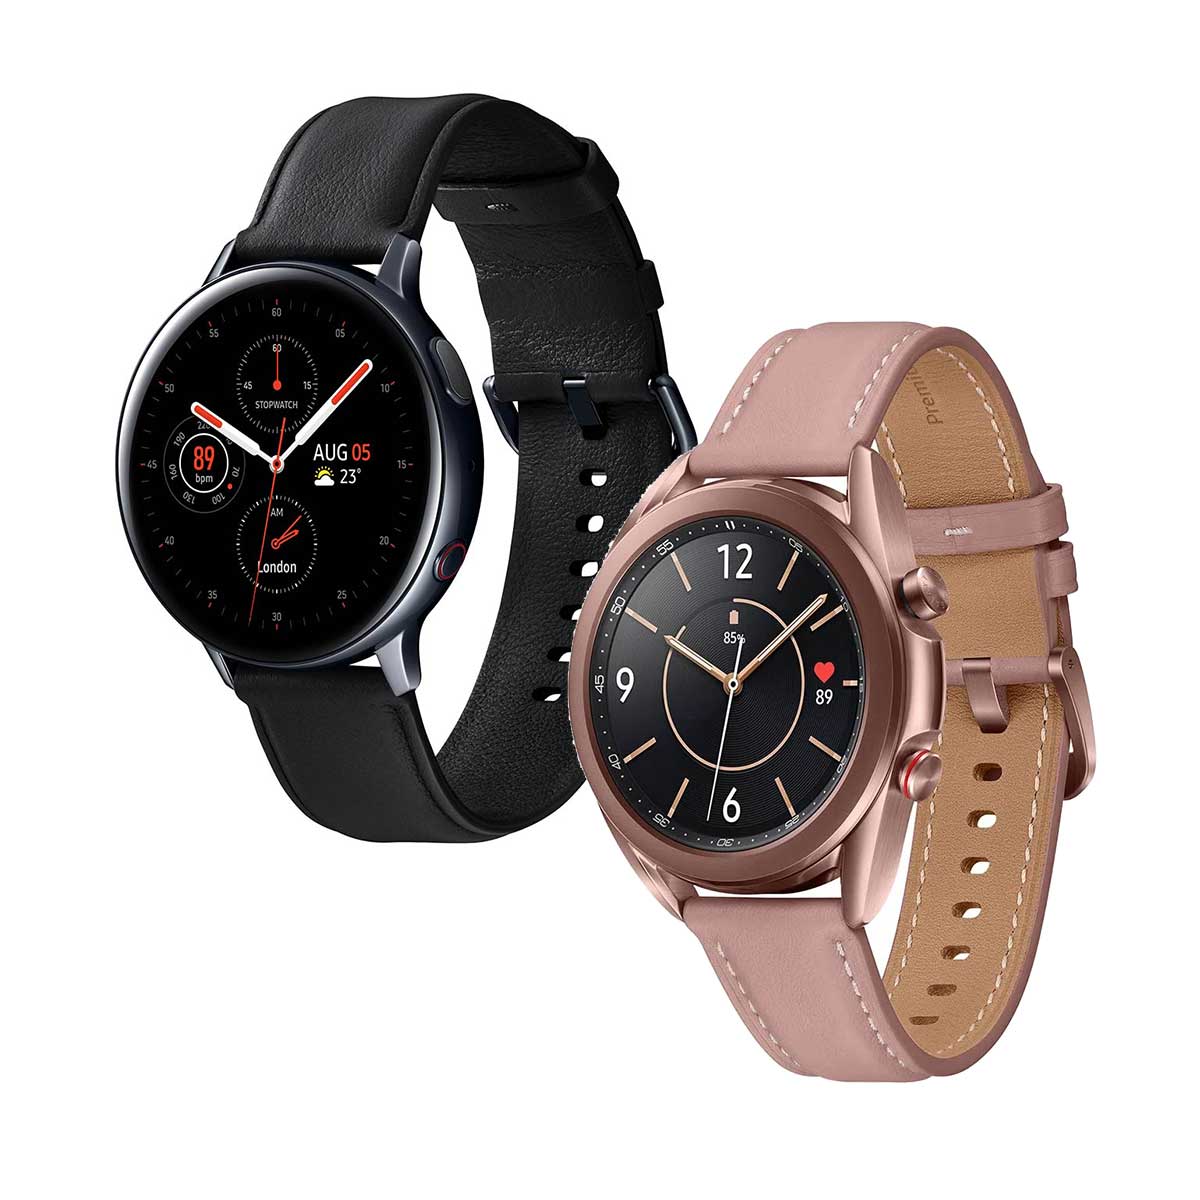 kit-smartwatch-samsung-2-pecas--galaxy-watch3-41mm-lte-bronze---galaxy-active2-lte-44mm-preto-1.jpg